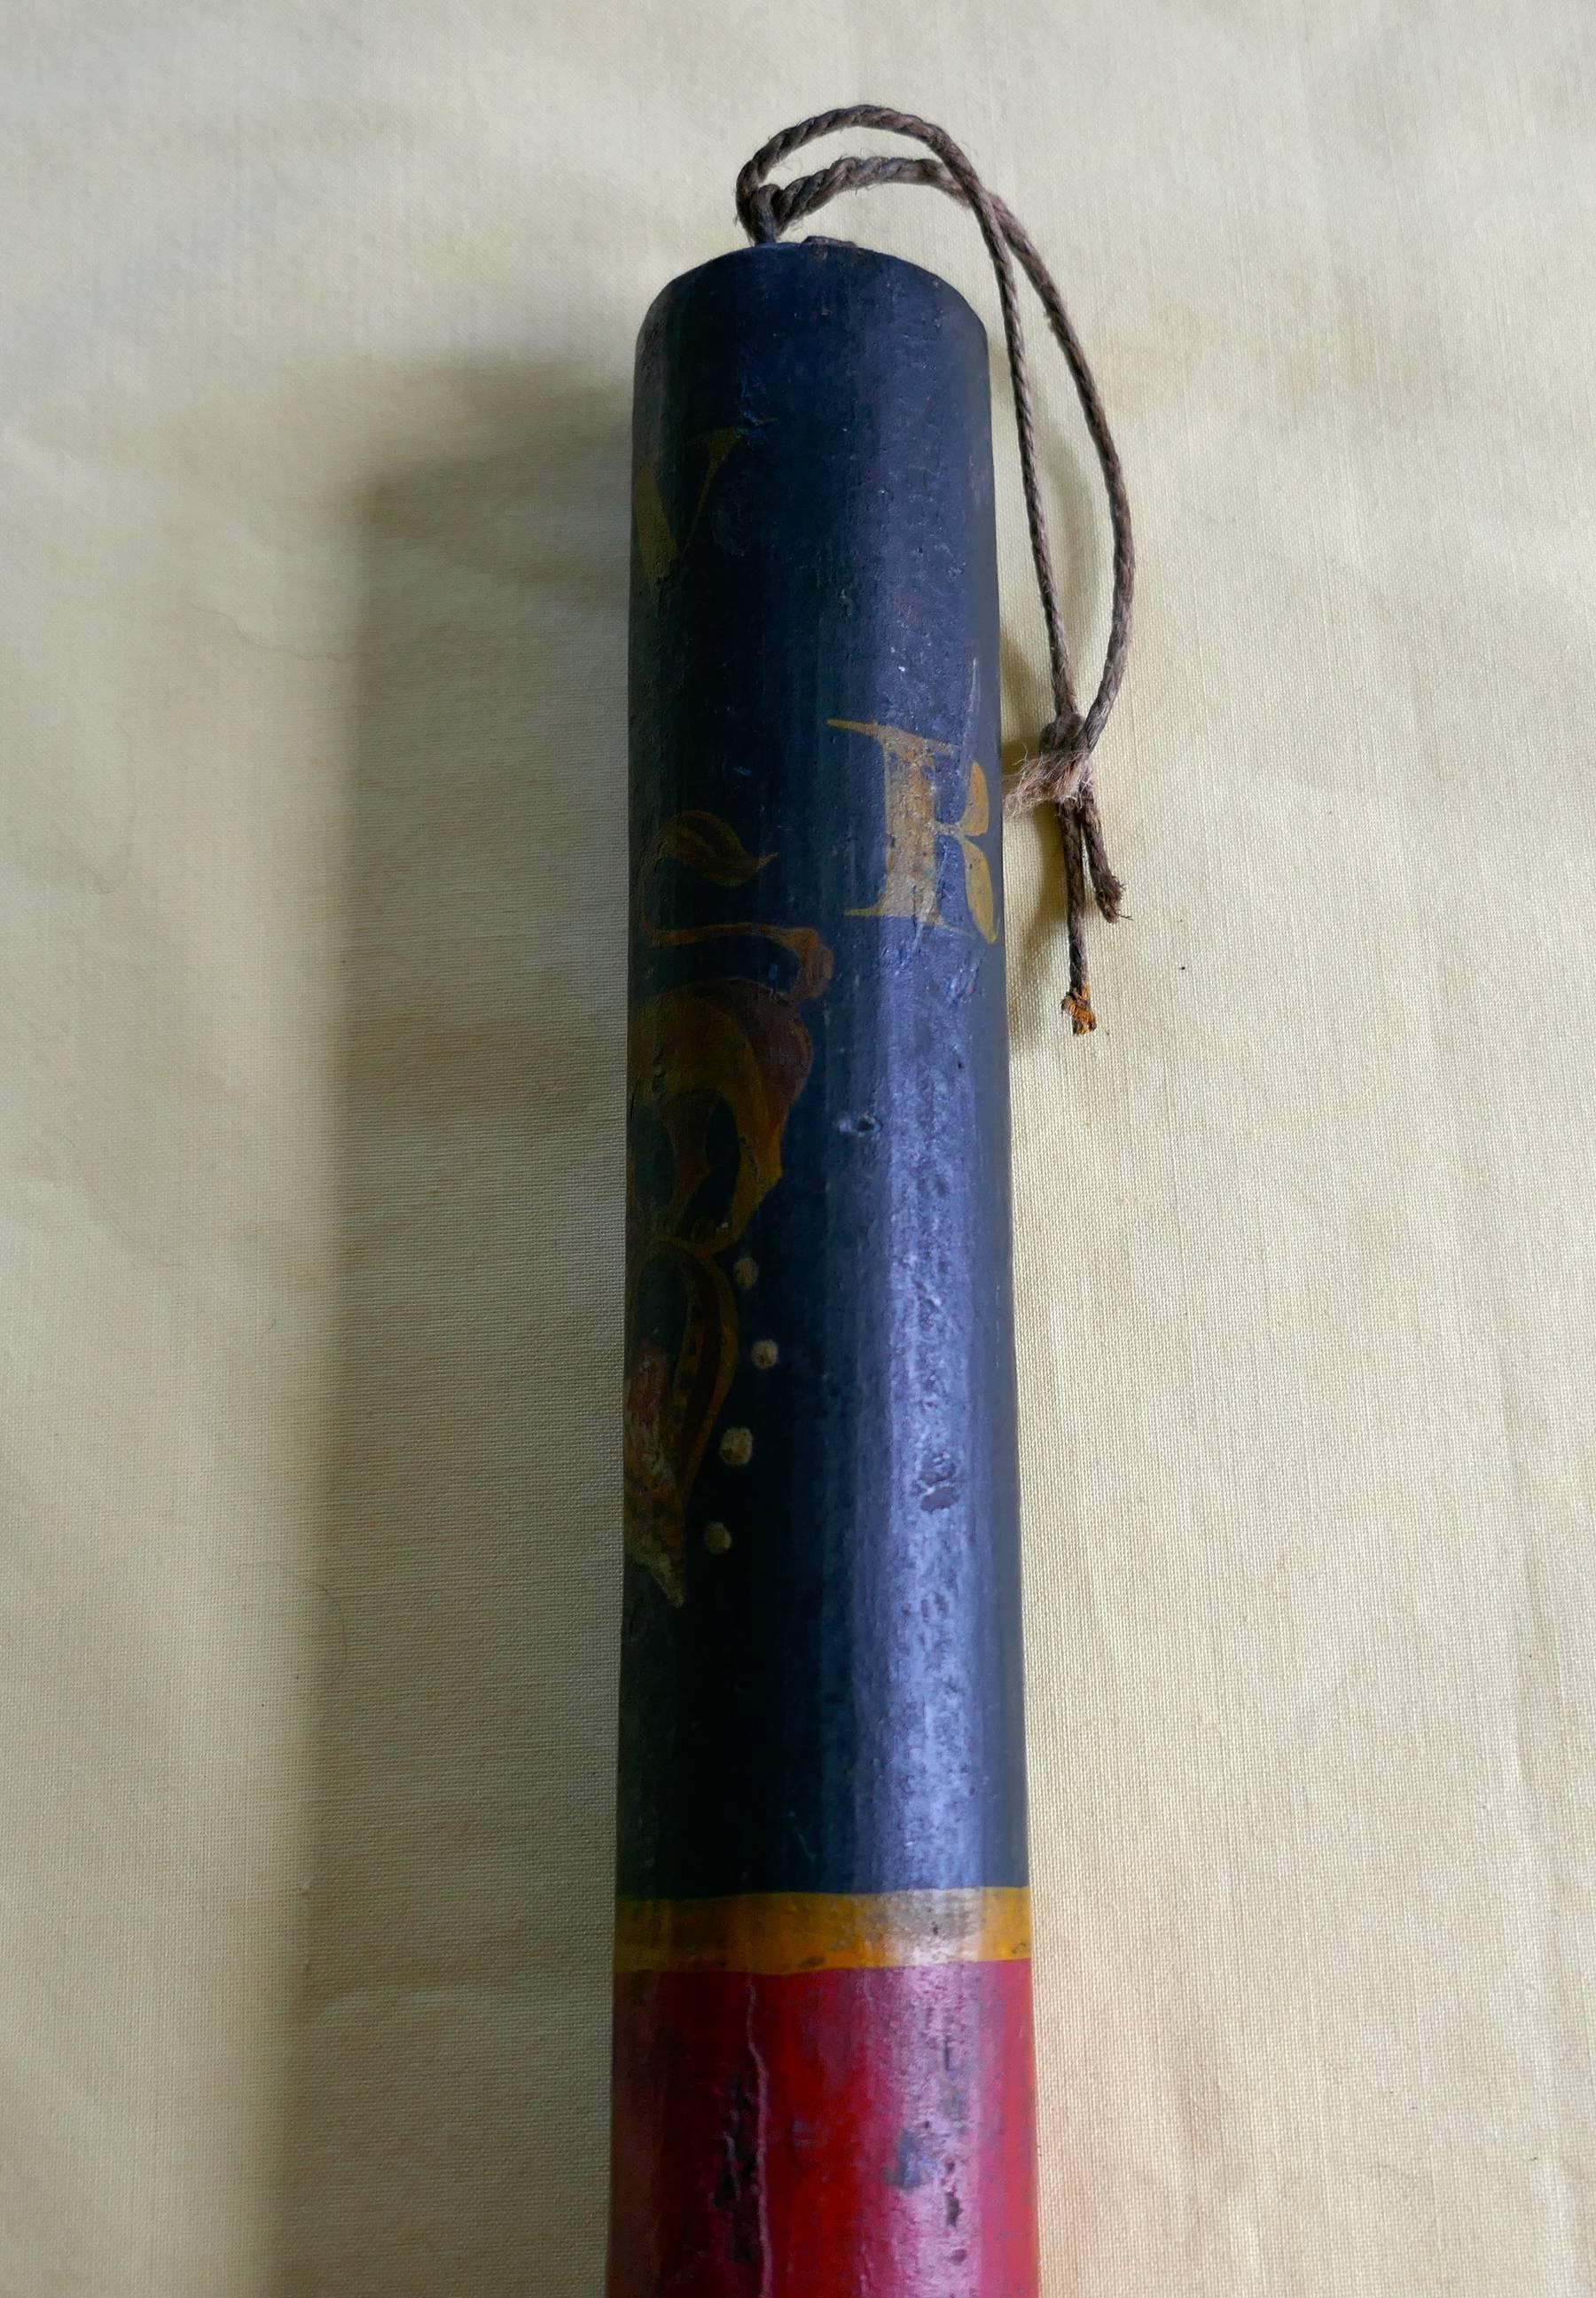 Une matraque de policier William IV.

Le bâton a une poignée légèrement profilée, la partie inférieure est peinte en rouge et la partie supérieure a un fond bleu avec le chiffre de la couronne à crête de lion de WR IV.

Une bonne pièce honnête